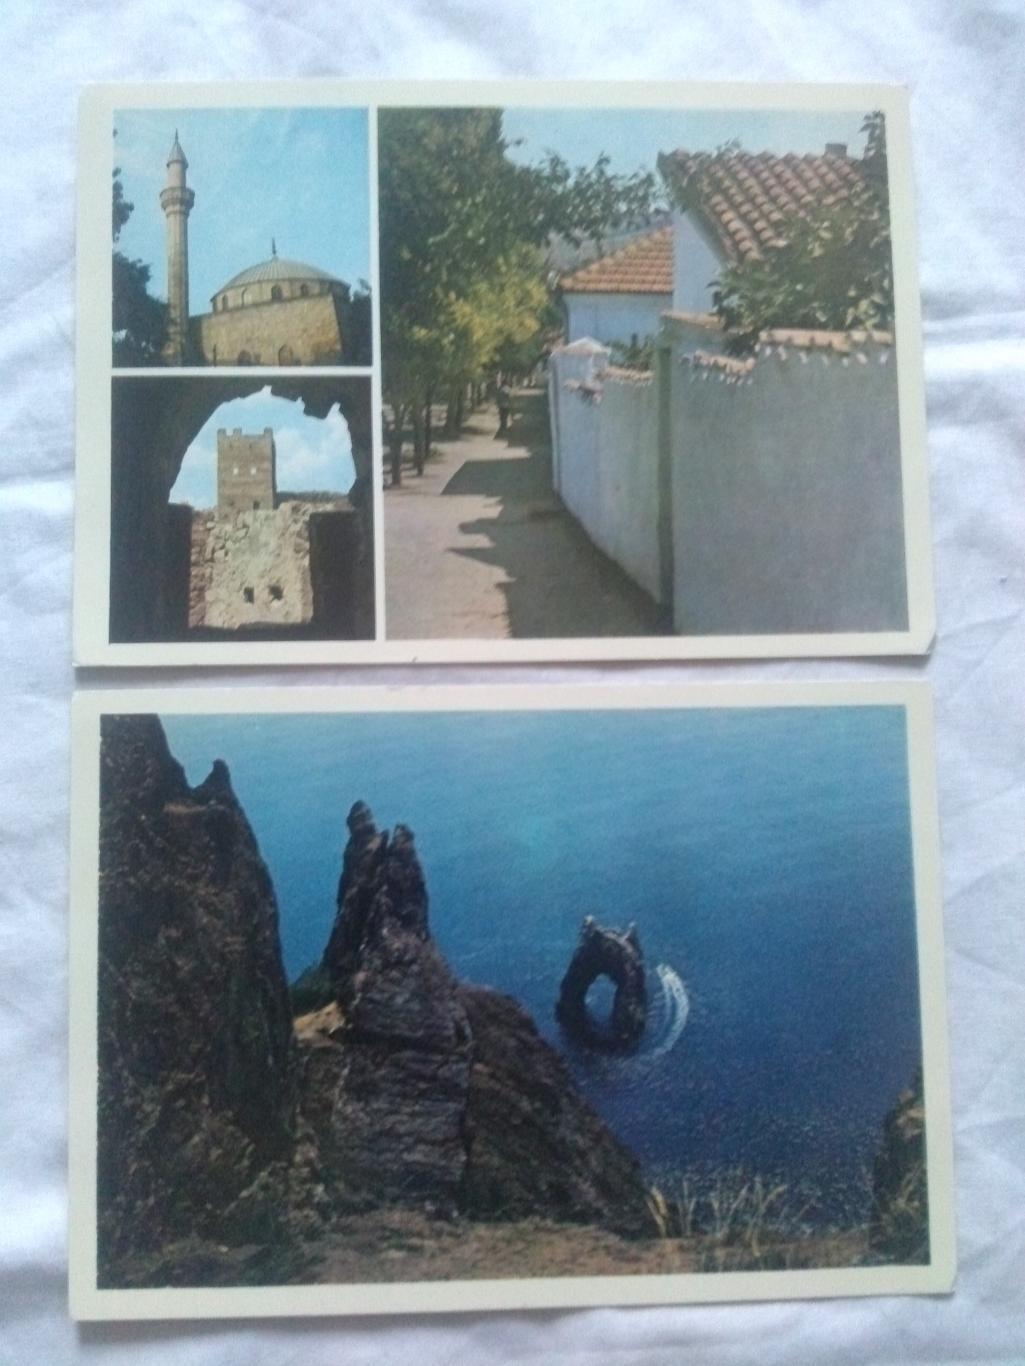 А.С. Грин - поэт мечты , романтики и моря 1981 г. полный набор - 8 открыток 2